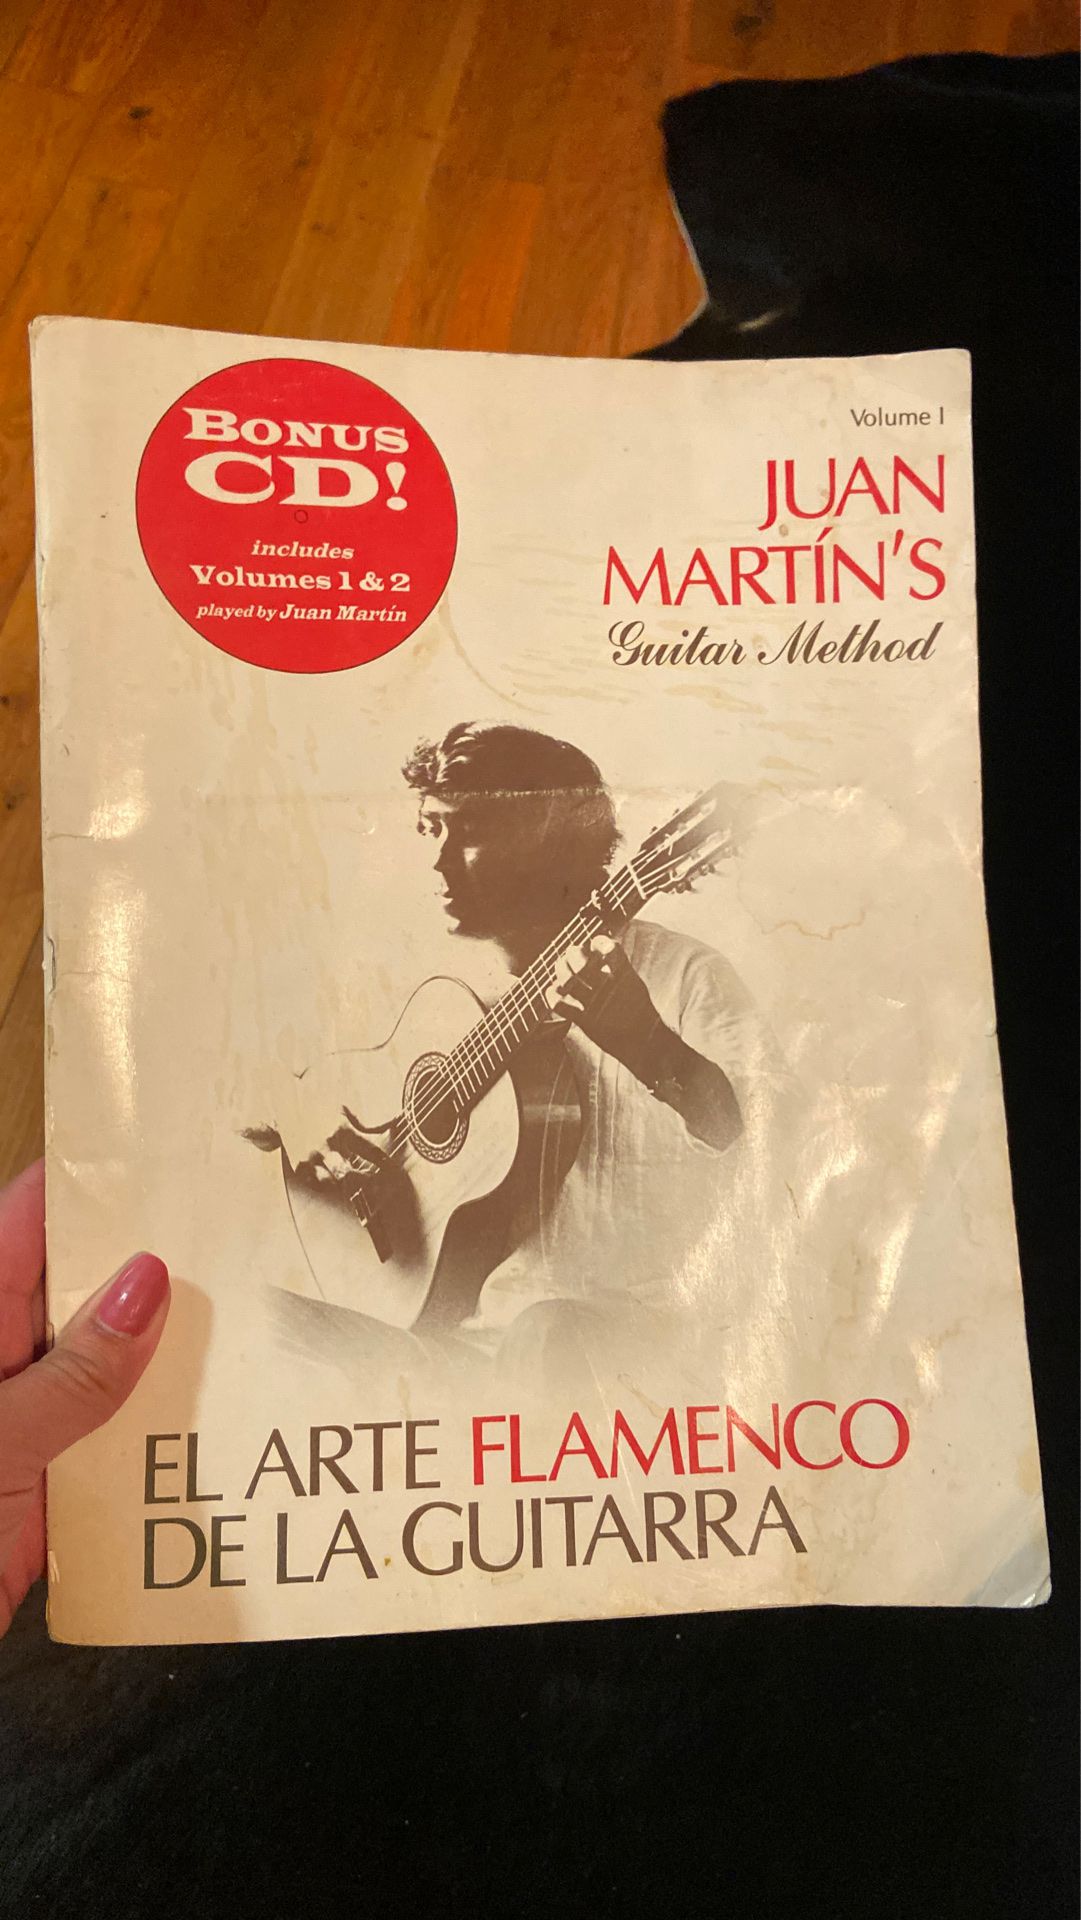 Juan Martin’s Guitar Method Vol. 1